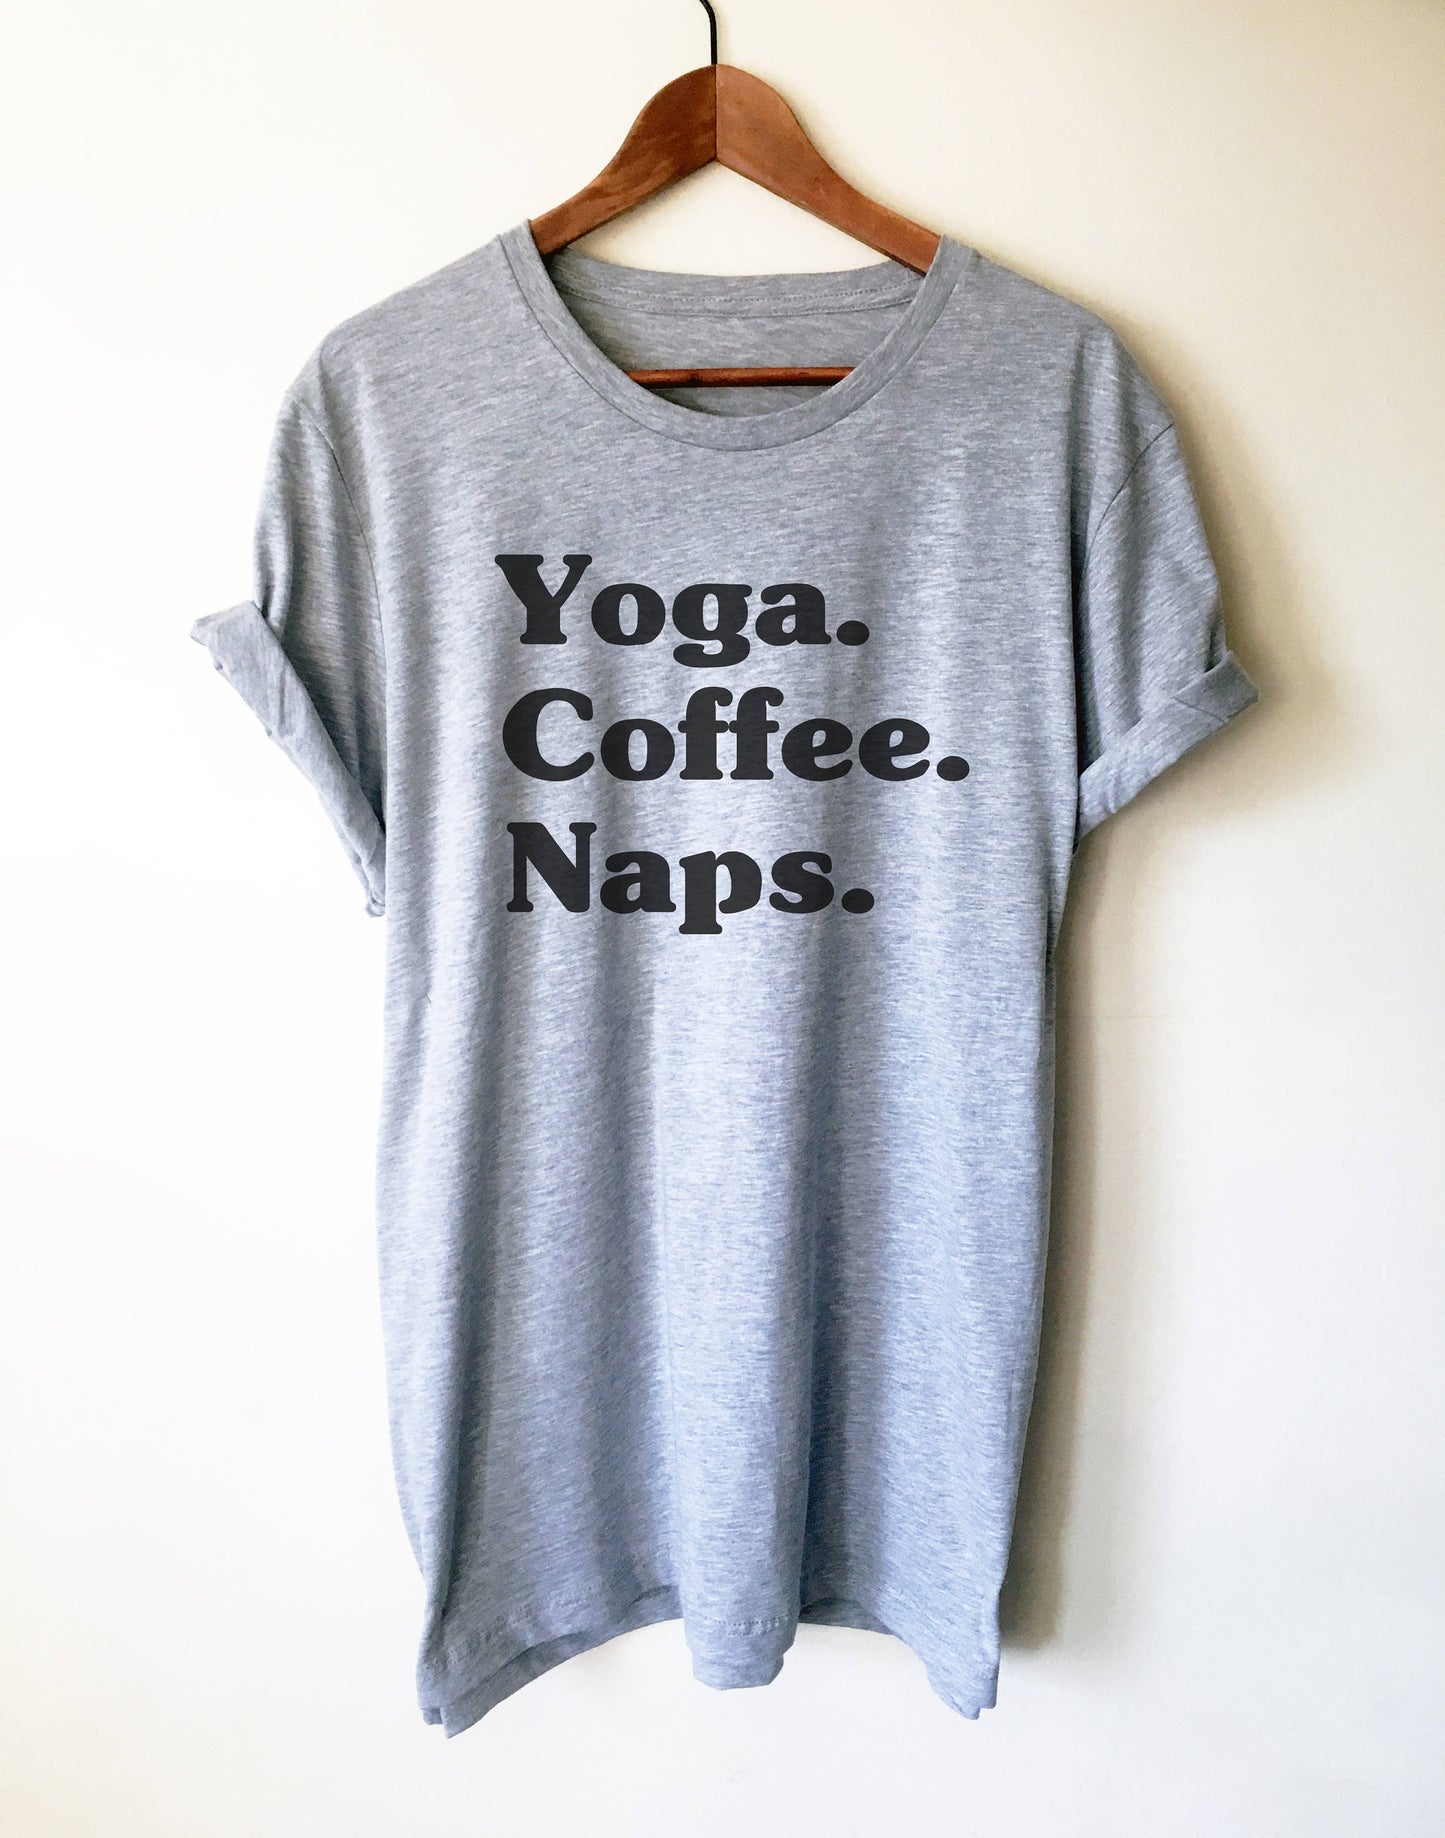 Yoga Coffee Naps Unisex Shirt - Yoga shirt, Funny namaste shirt, Hot yoga shirts, Yoga pose shirt, Yoga coffee shirt, Namaste in bed